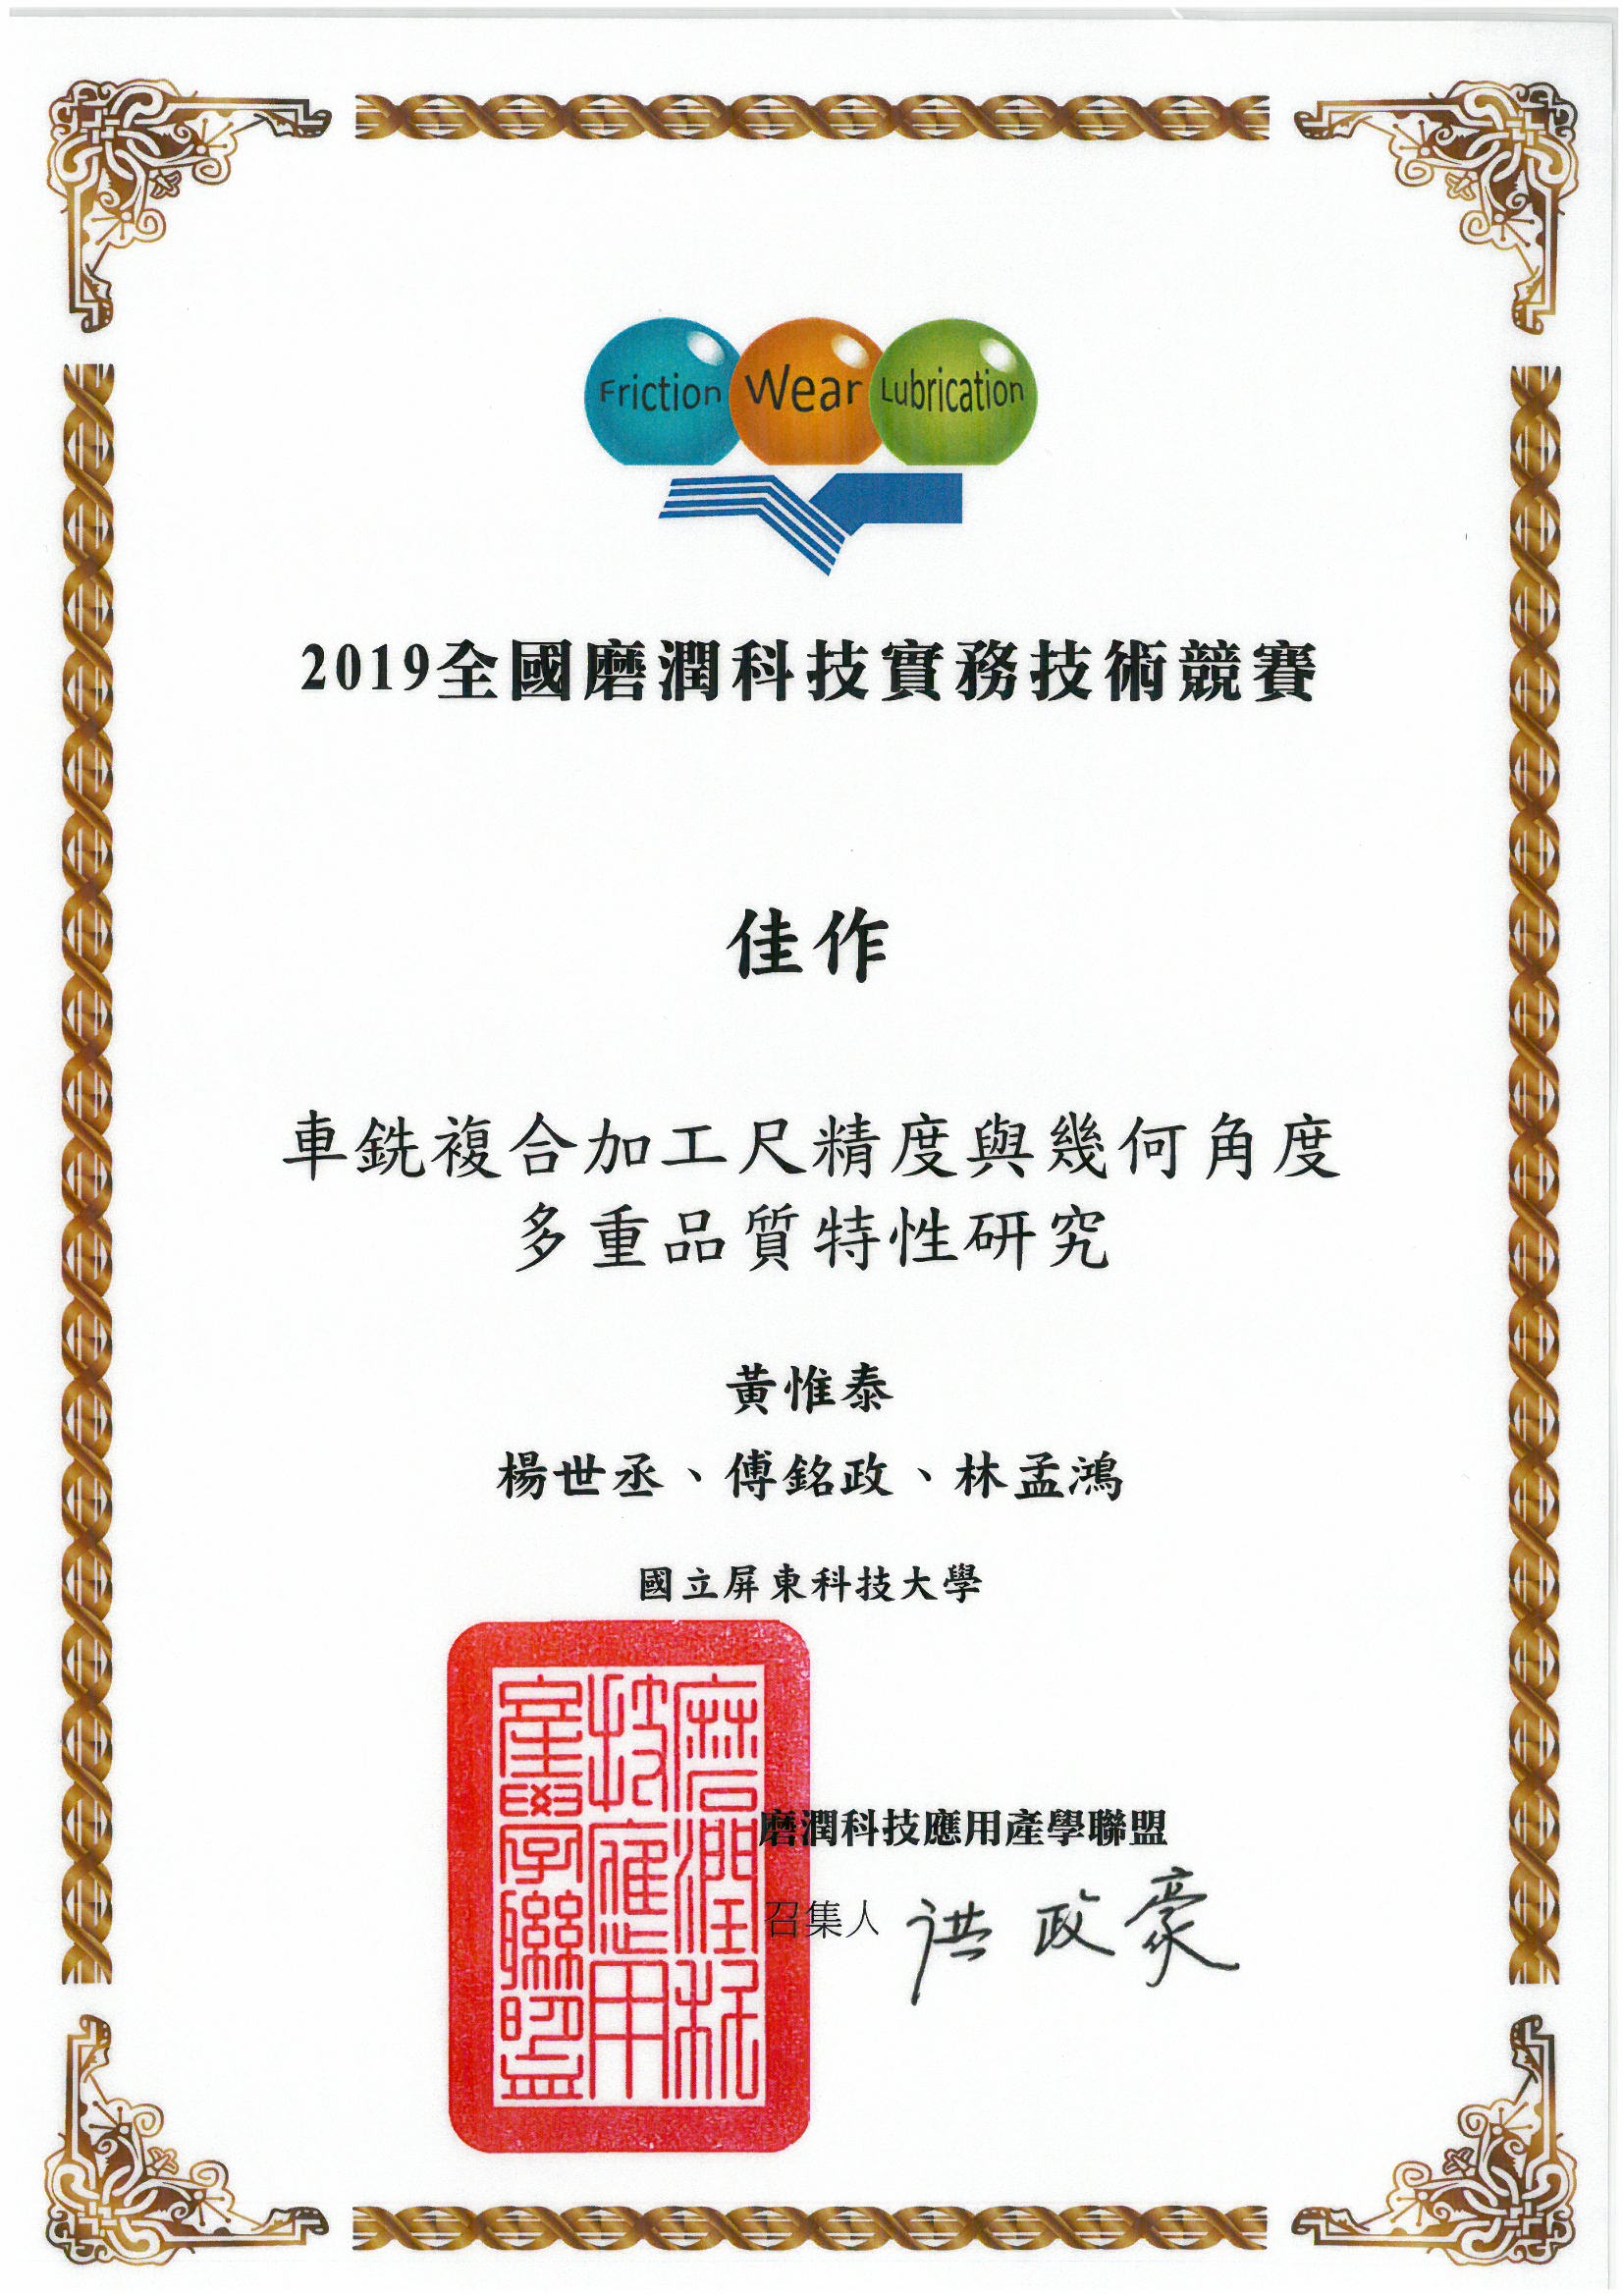 黃惟泰老師指導學生參加2019全國磨潤科技實務技術競賽榮獲佳作